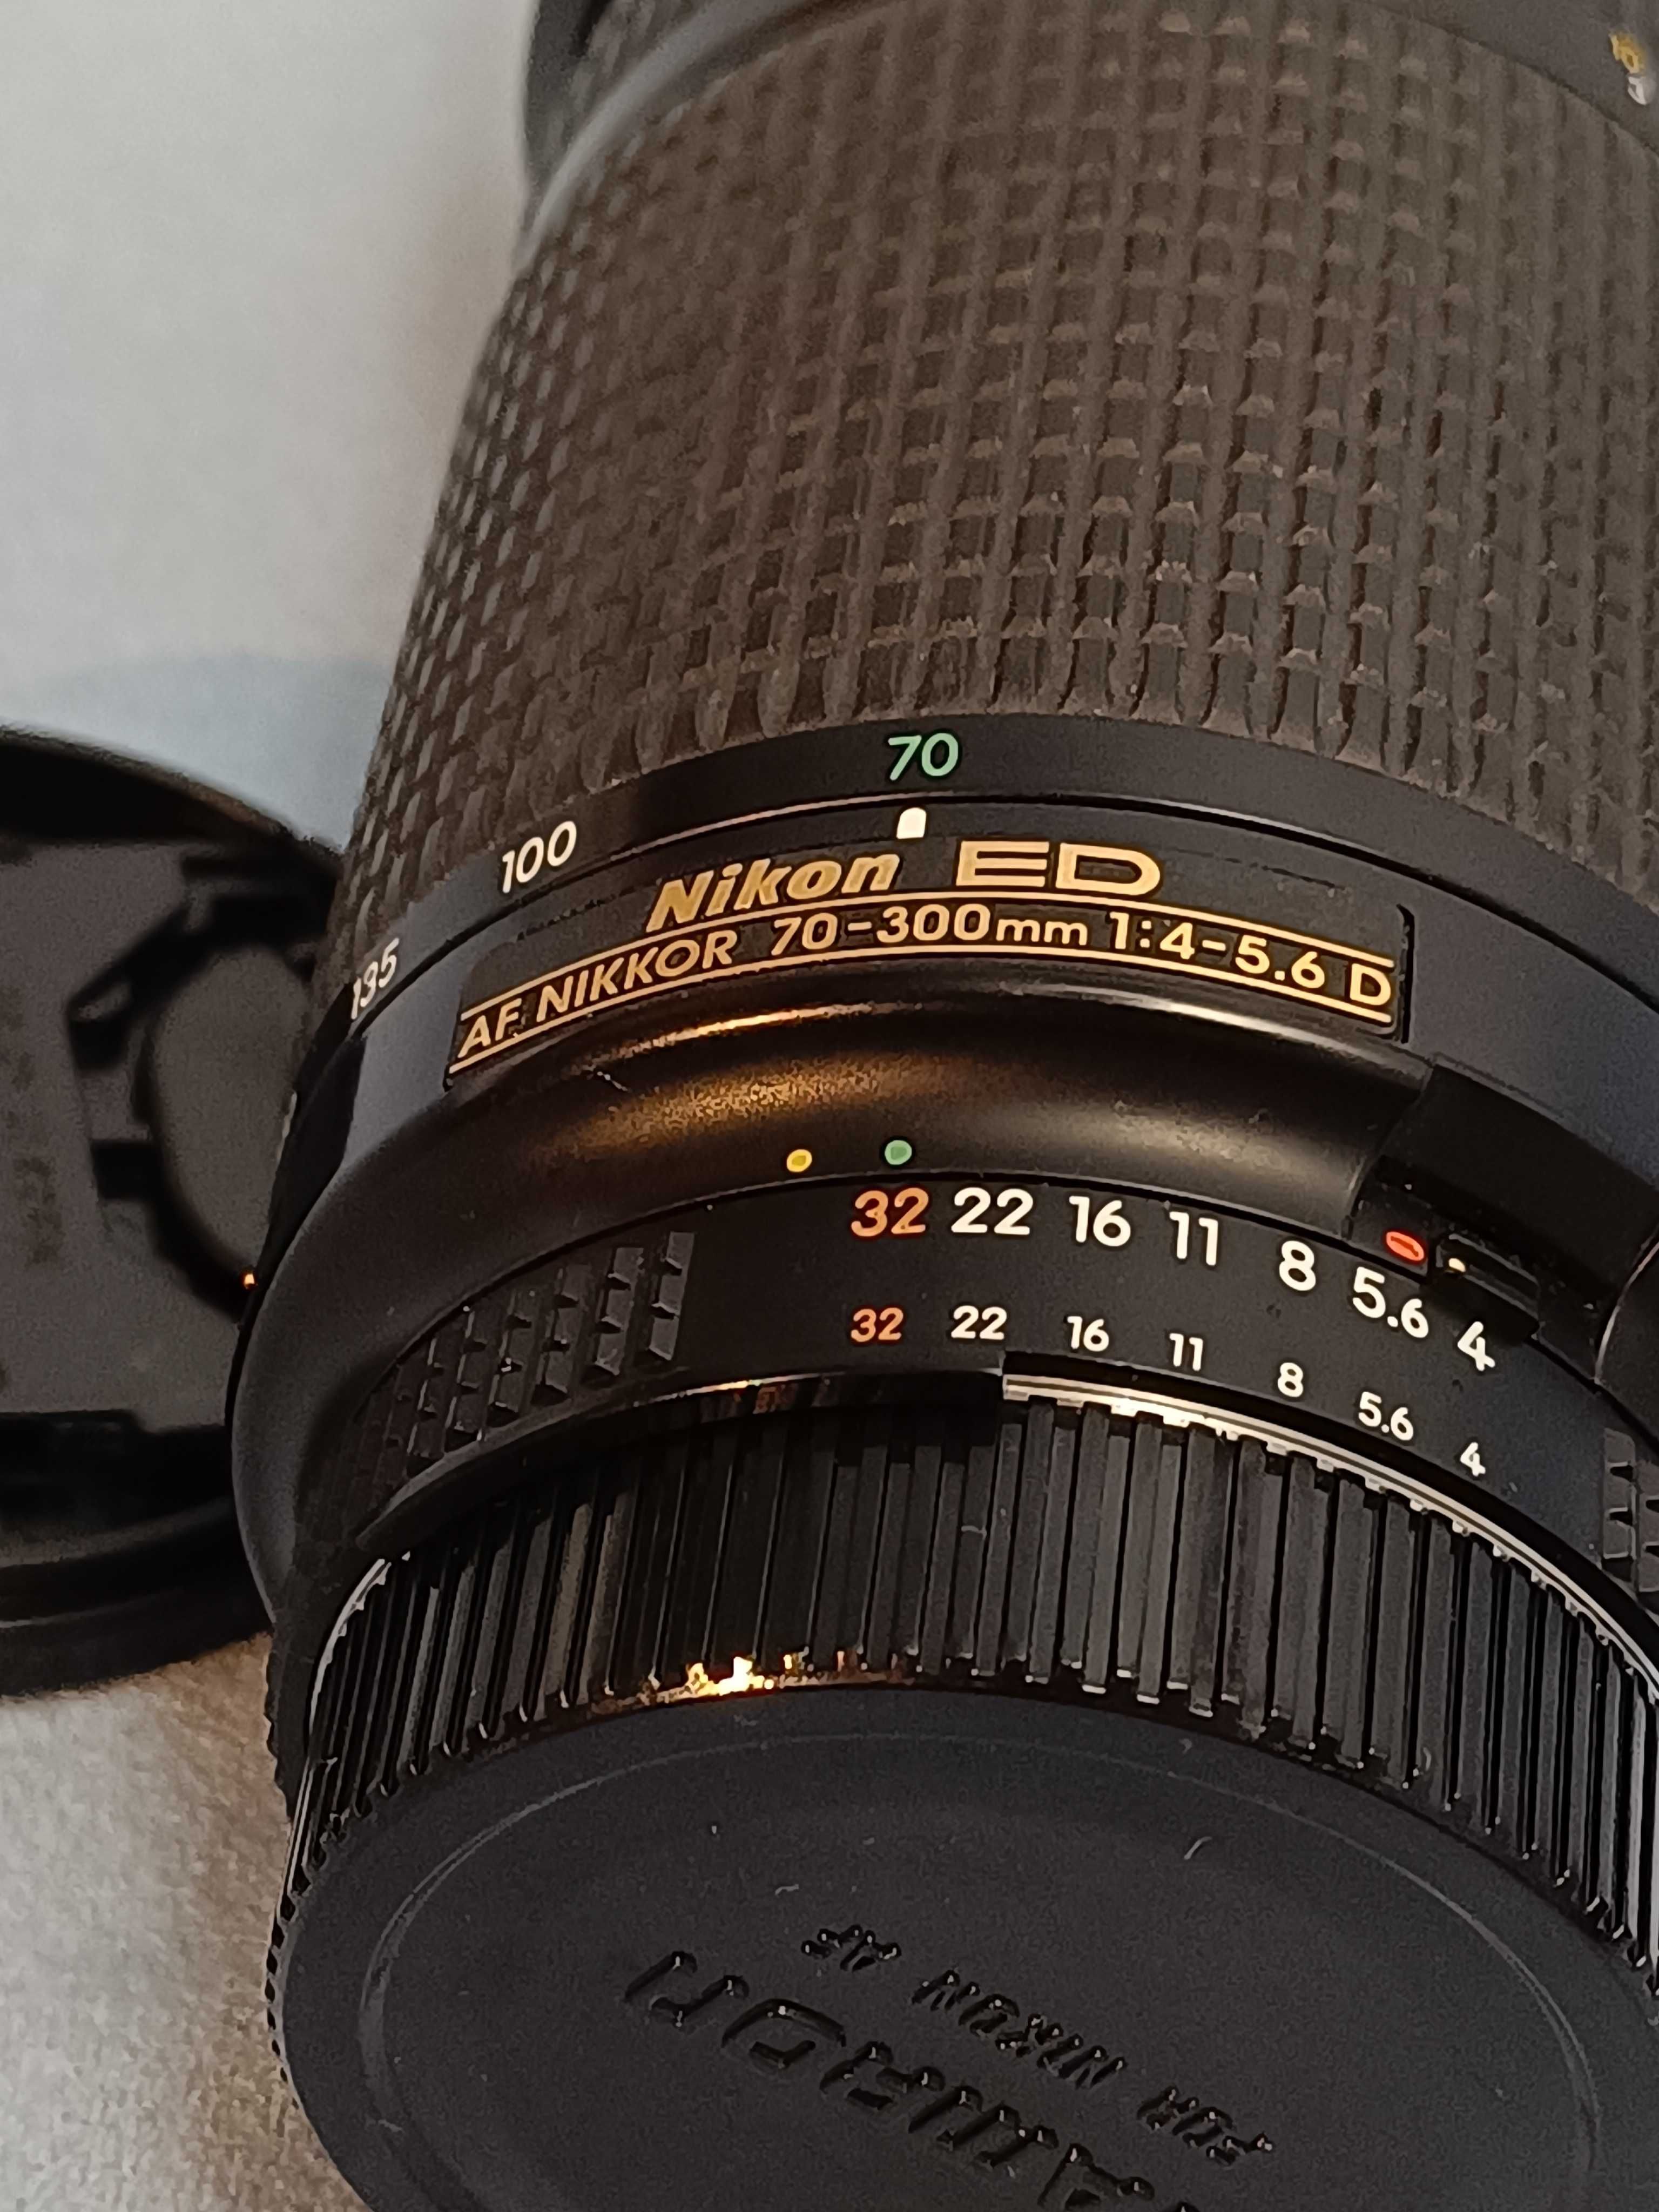 Nikon D 610 in perfecta stare cu 38K cu zoom 70-300  4-5,6 D Japan